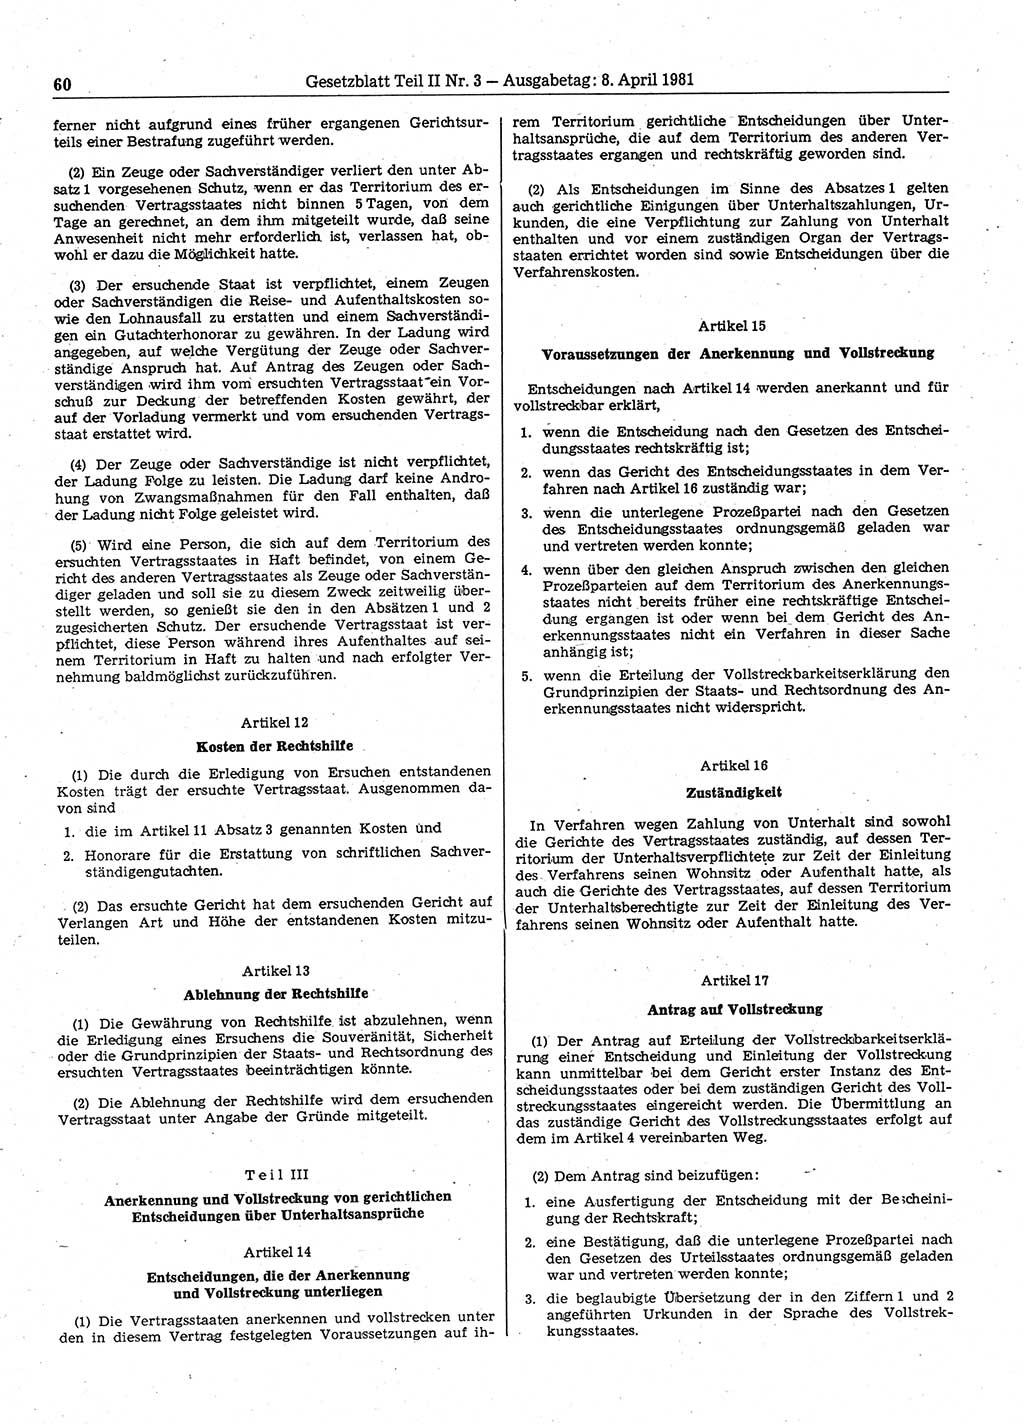 Gesetzblatt (GBl.) der Deutschen Demokratischen Republik (DDR) Teil ⅠⅠ 1981, Seite 60 (GBl. DDR ⅠⅠ 1981, S. 60)